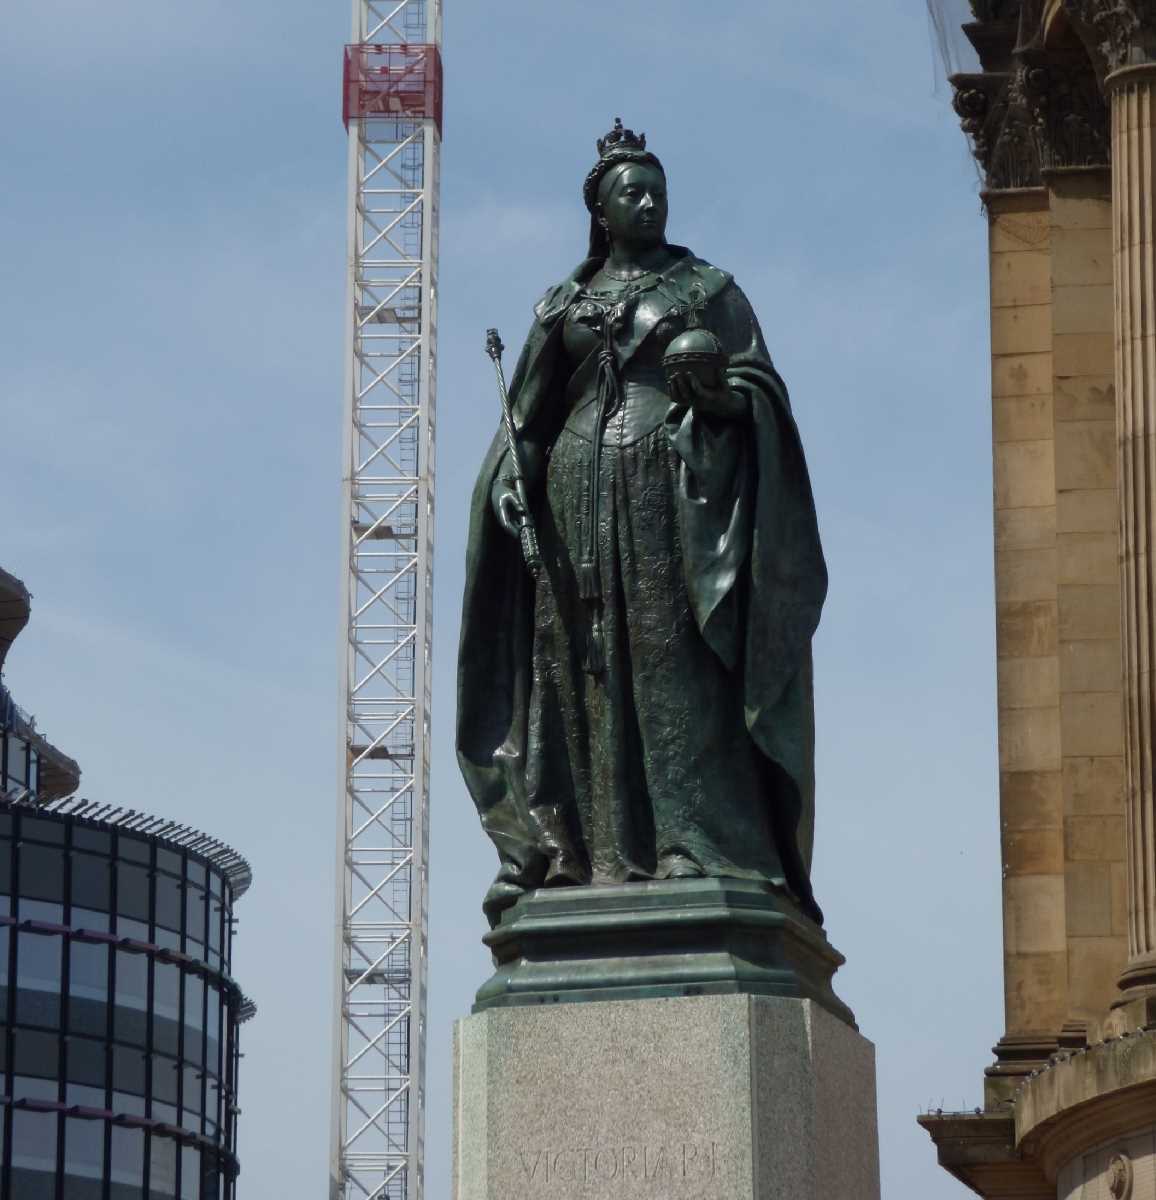 The statue of Queen Victoria in Victoria Square